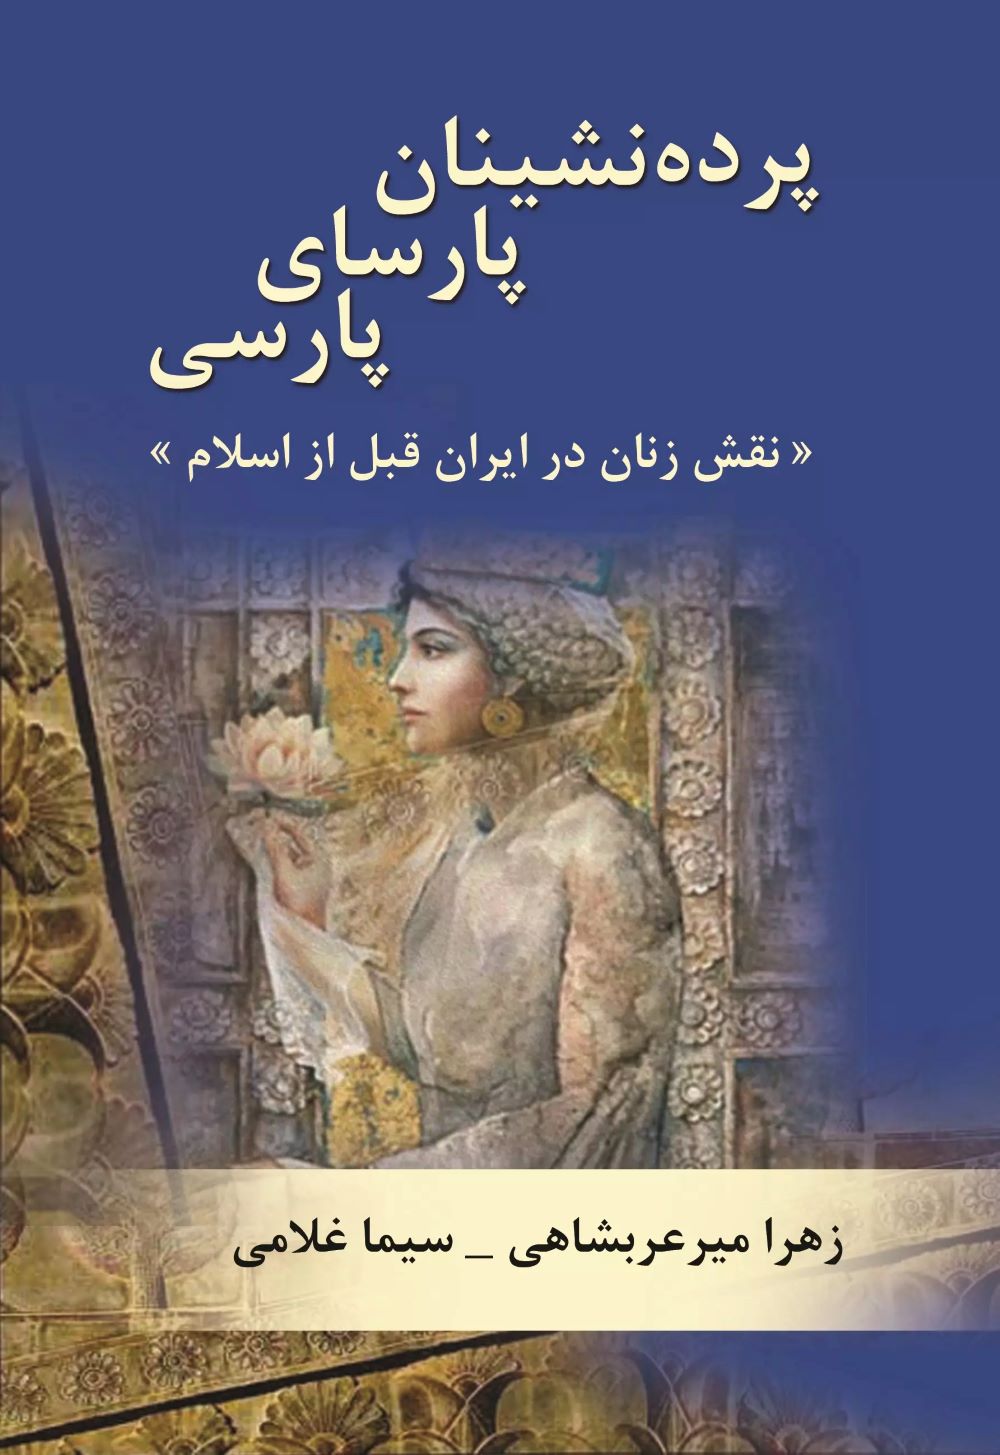  کتاب پرده نشینان پارسای پارسی